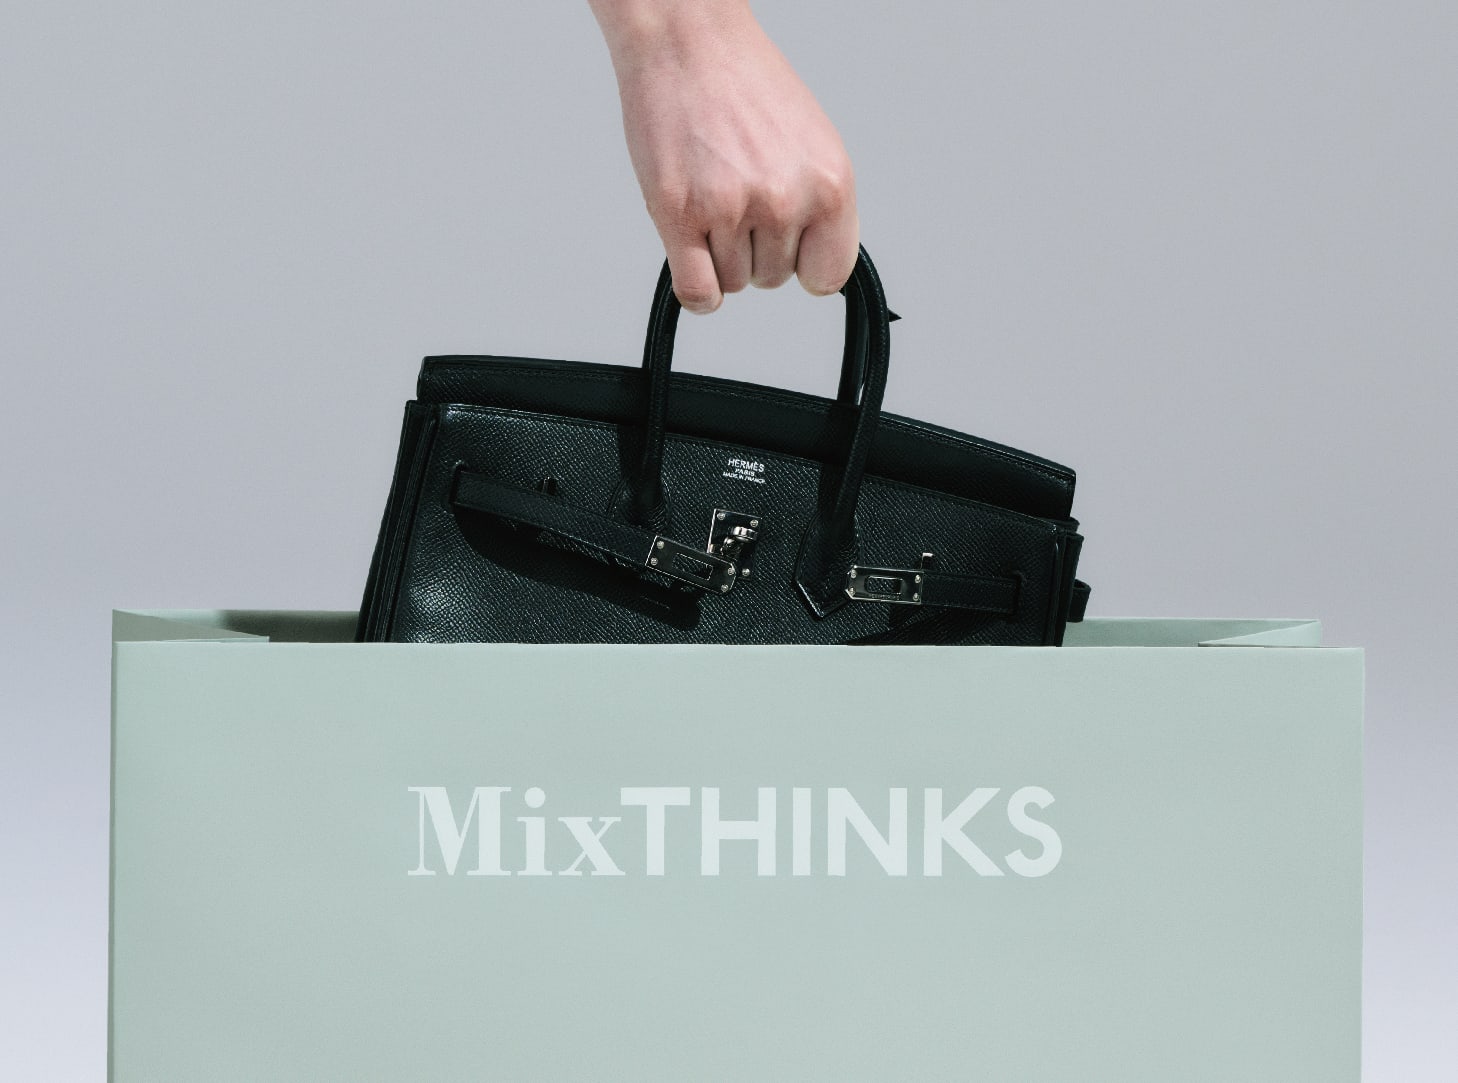 MixTHINKSについて紹介するイメージ画像。